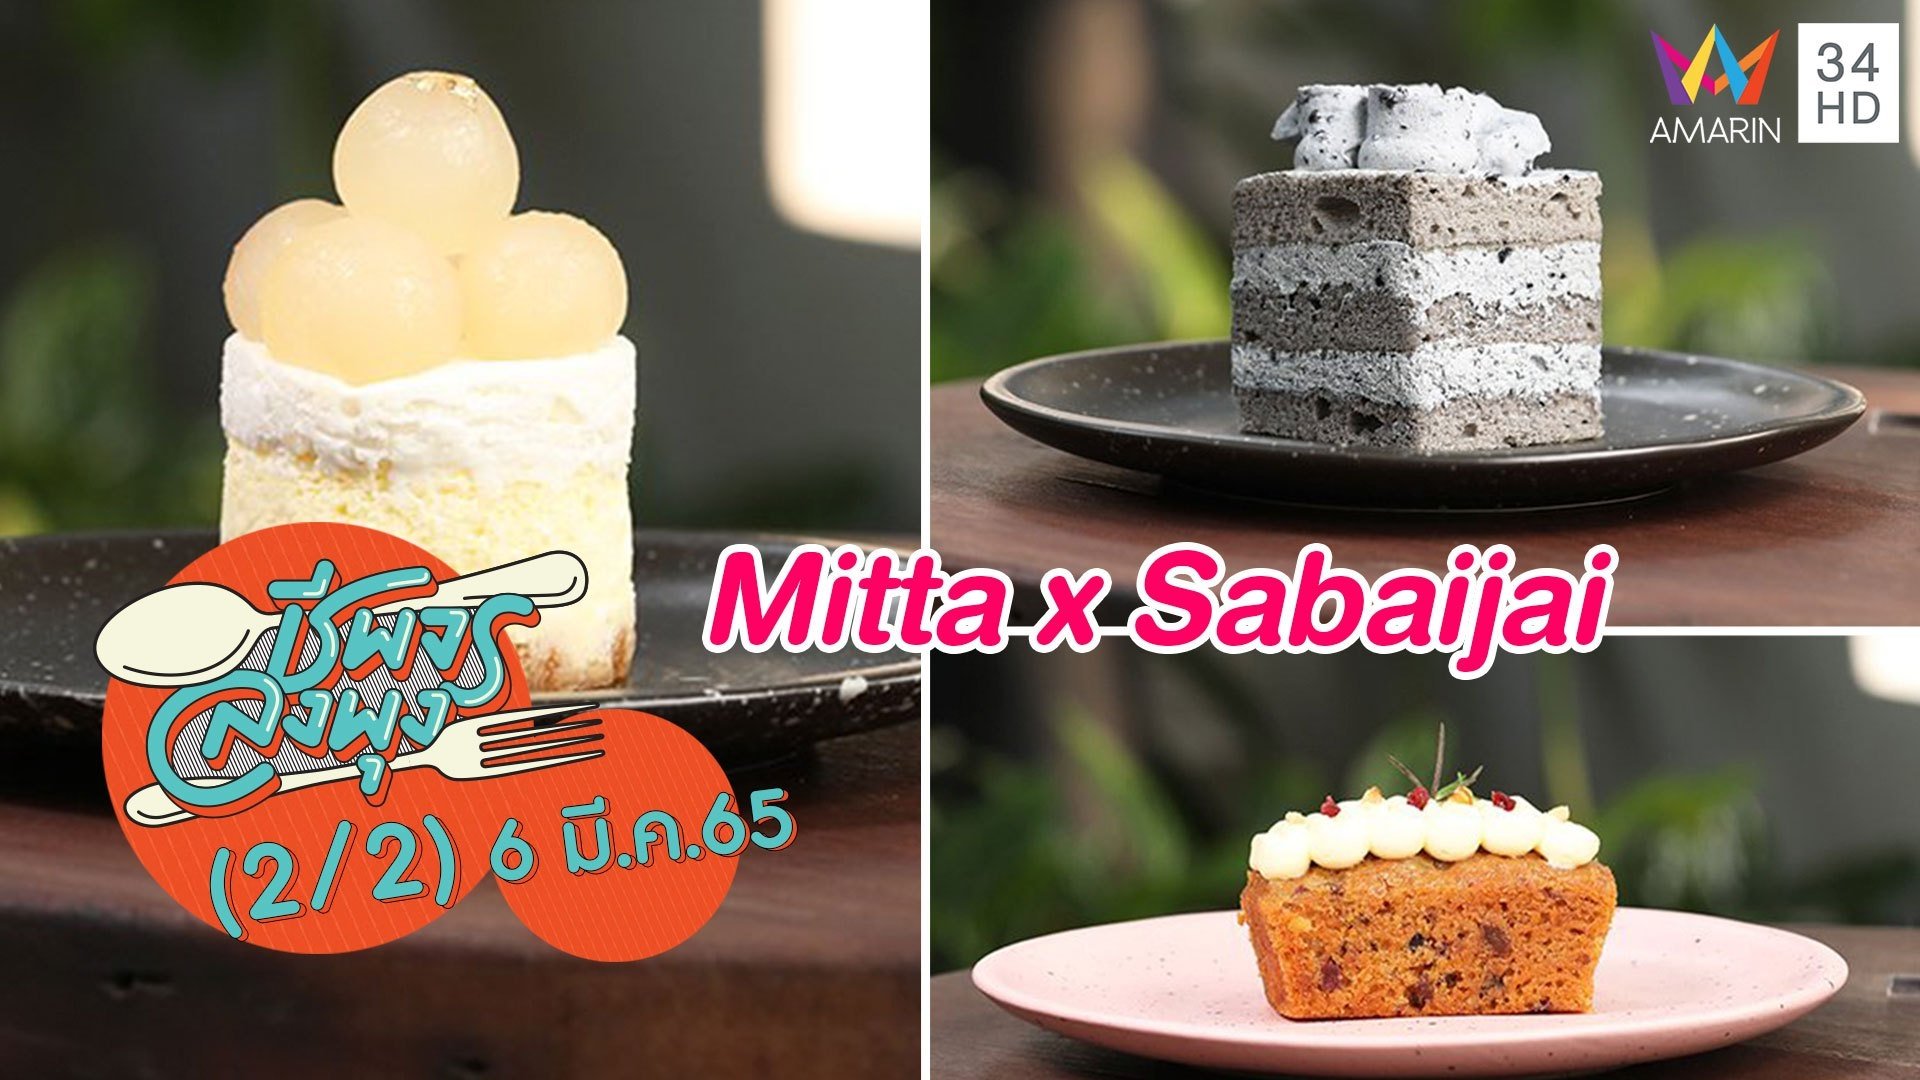 คาเฟ่แสนอบอุ่น @ร้าน Mitta x Sabaijai | ชีพจรลงพุง | 6 มี.ค. 65 (2/2) | AMARIN TVHD34